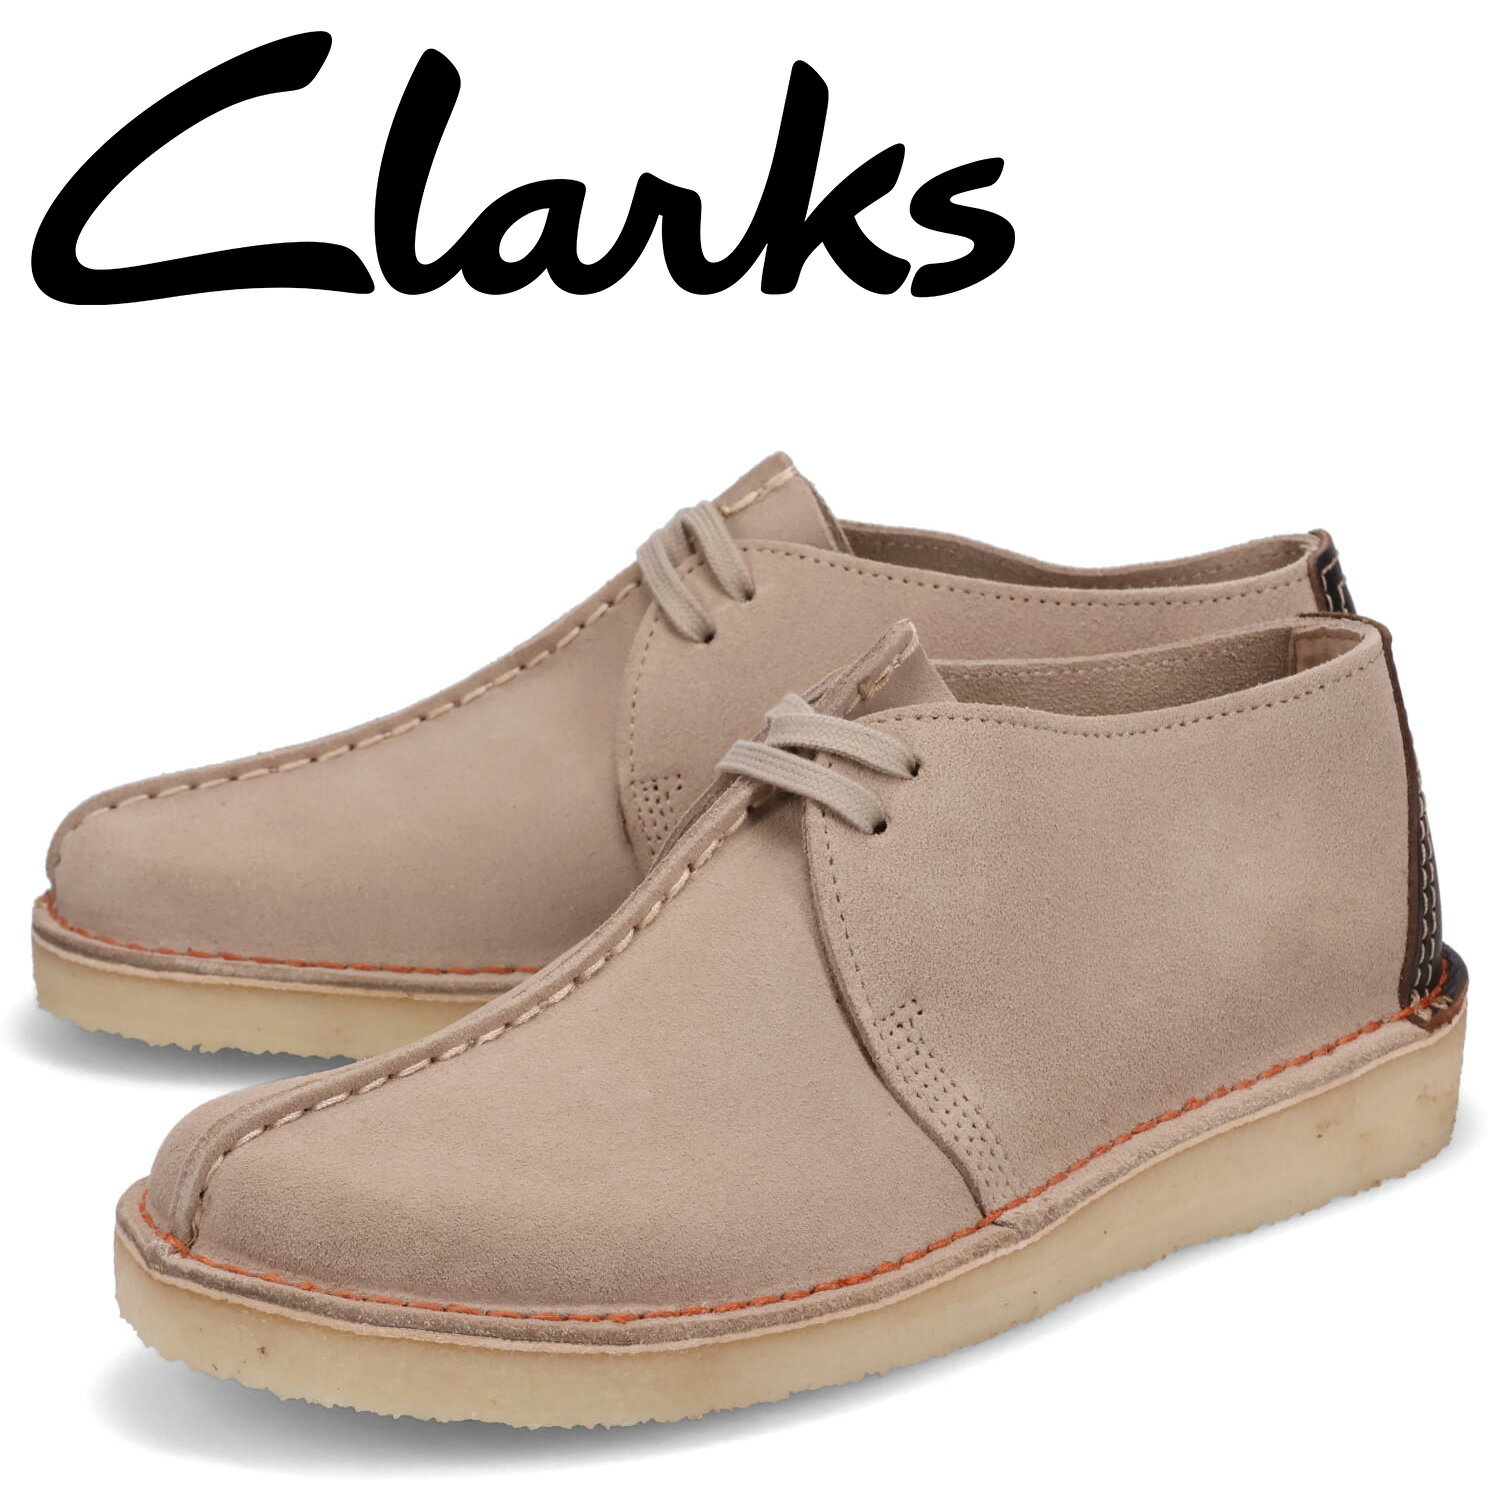 クラークス Clarks デザート トレック ブーツ メンズ スエード DESERT TREK ベージュ 26166211